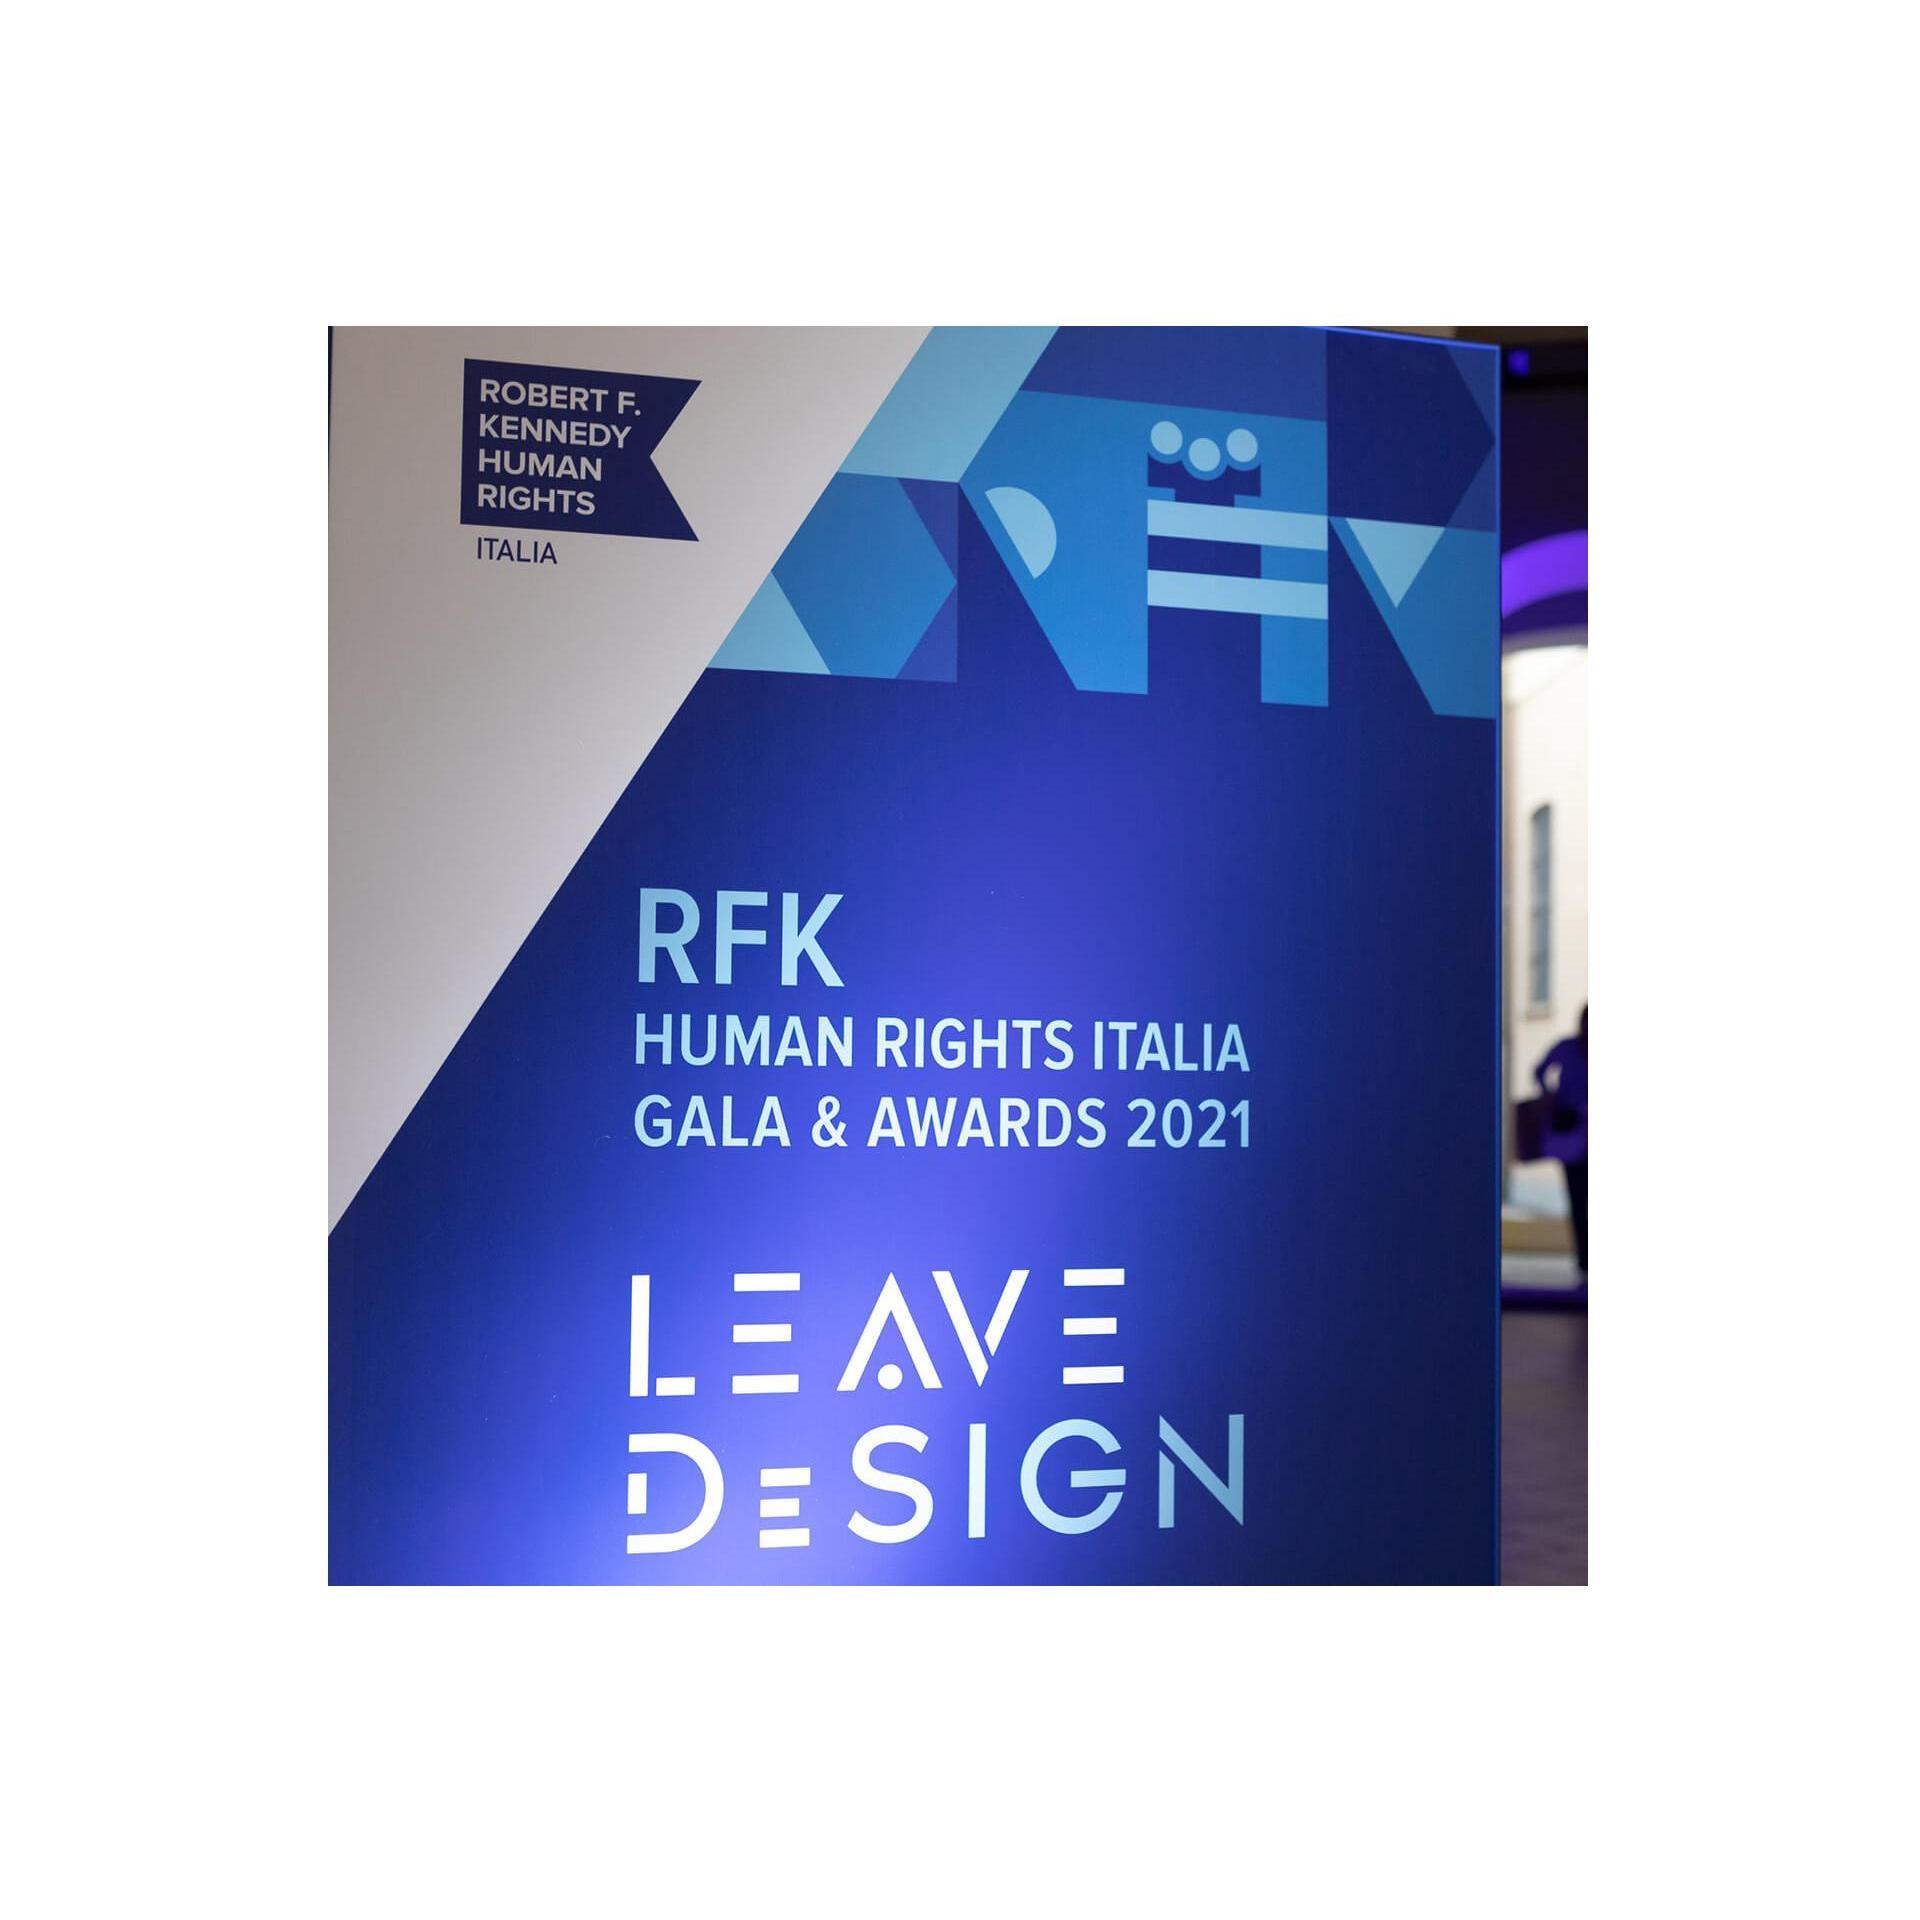 LEMA für die Benefiz-Auktion „Leave DeSign“ von RFK Italia